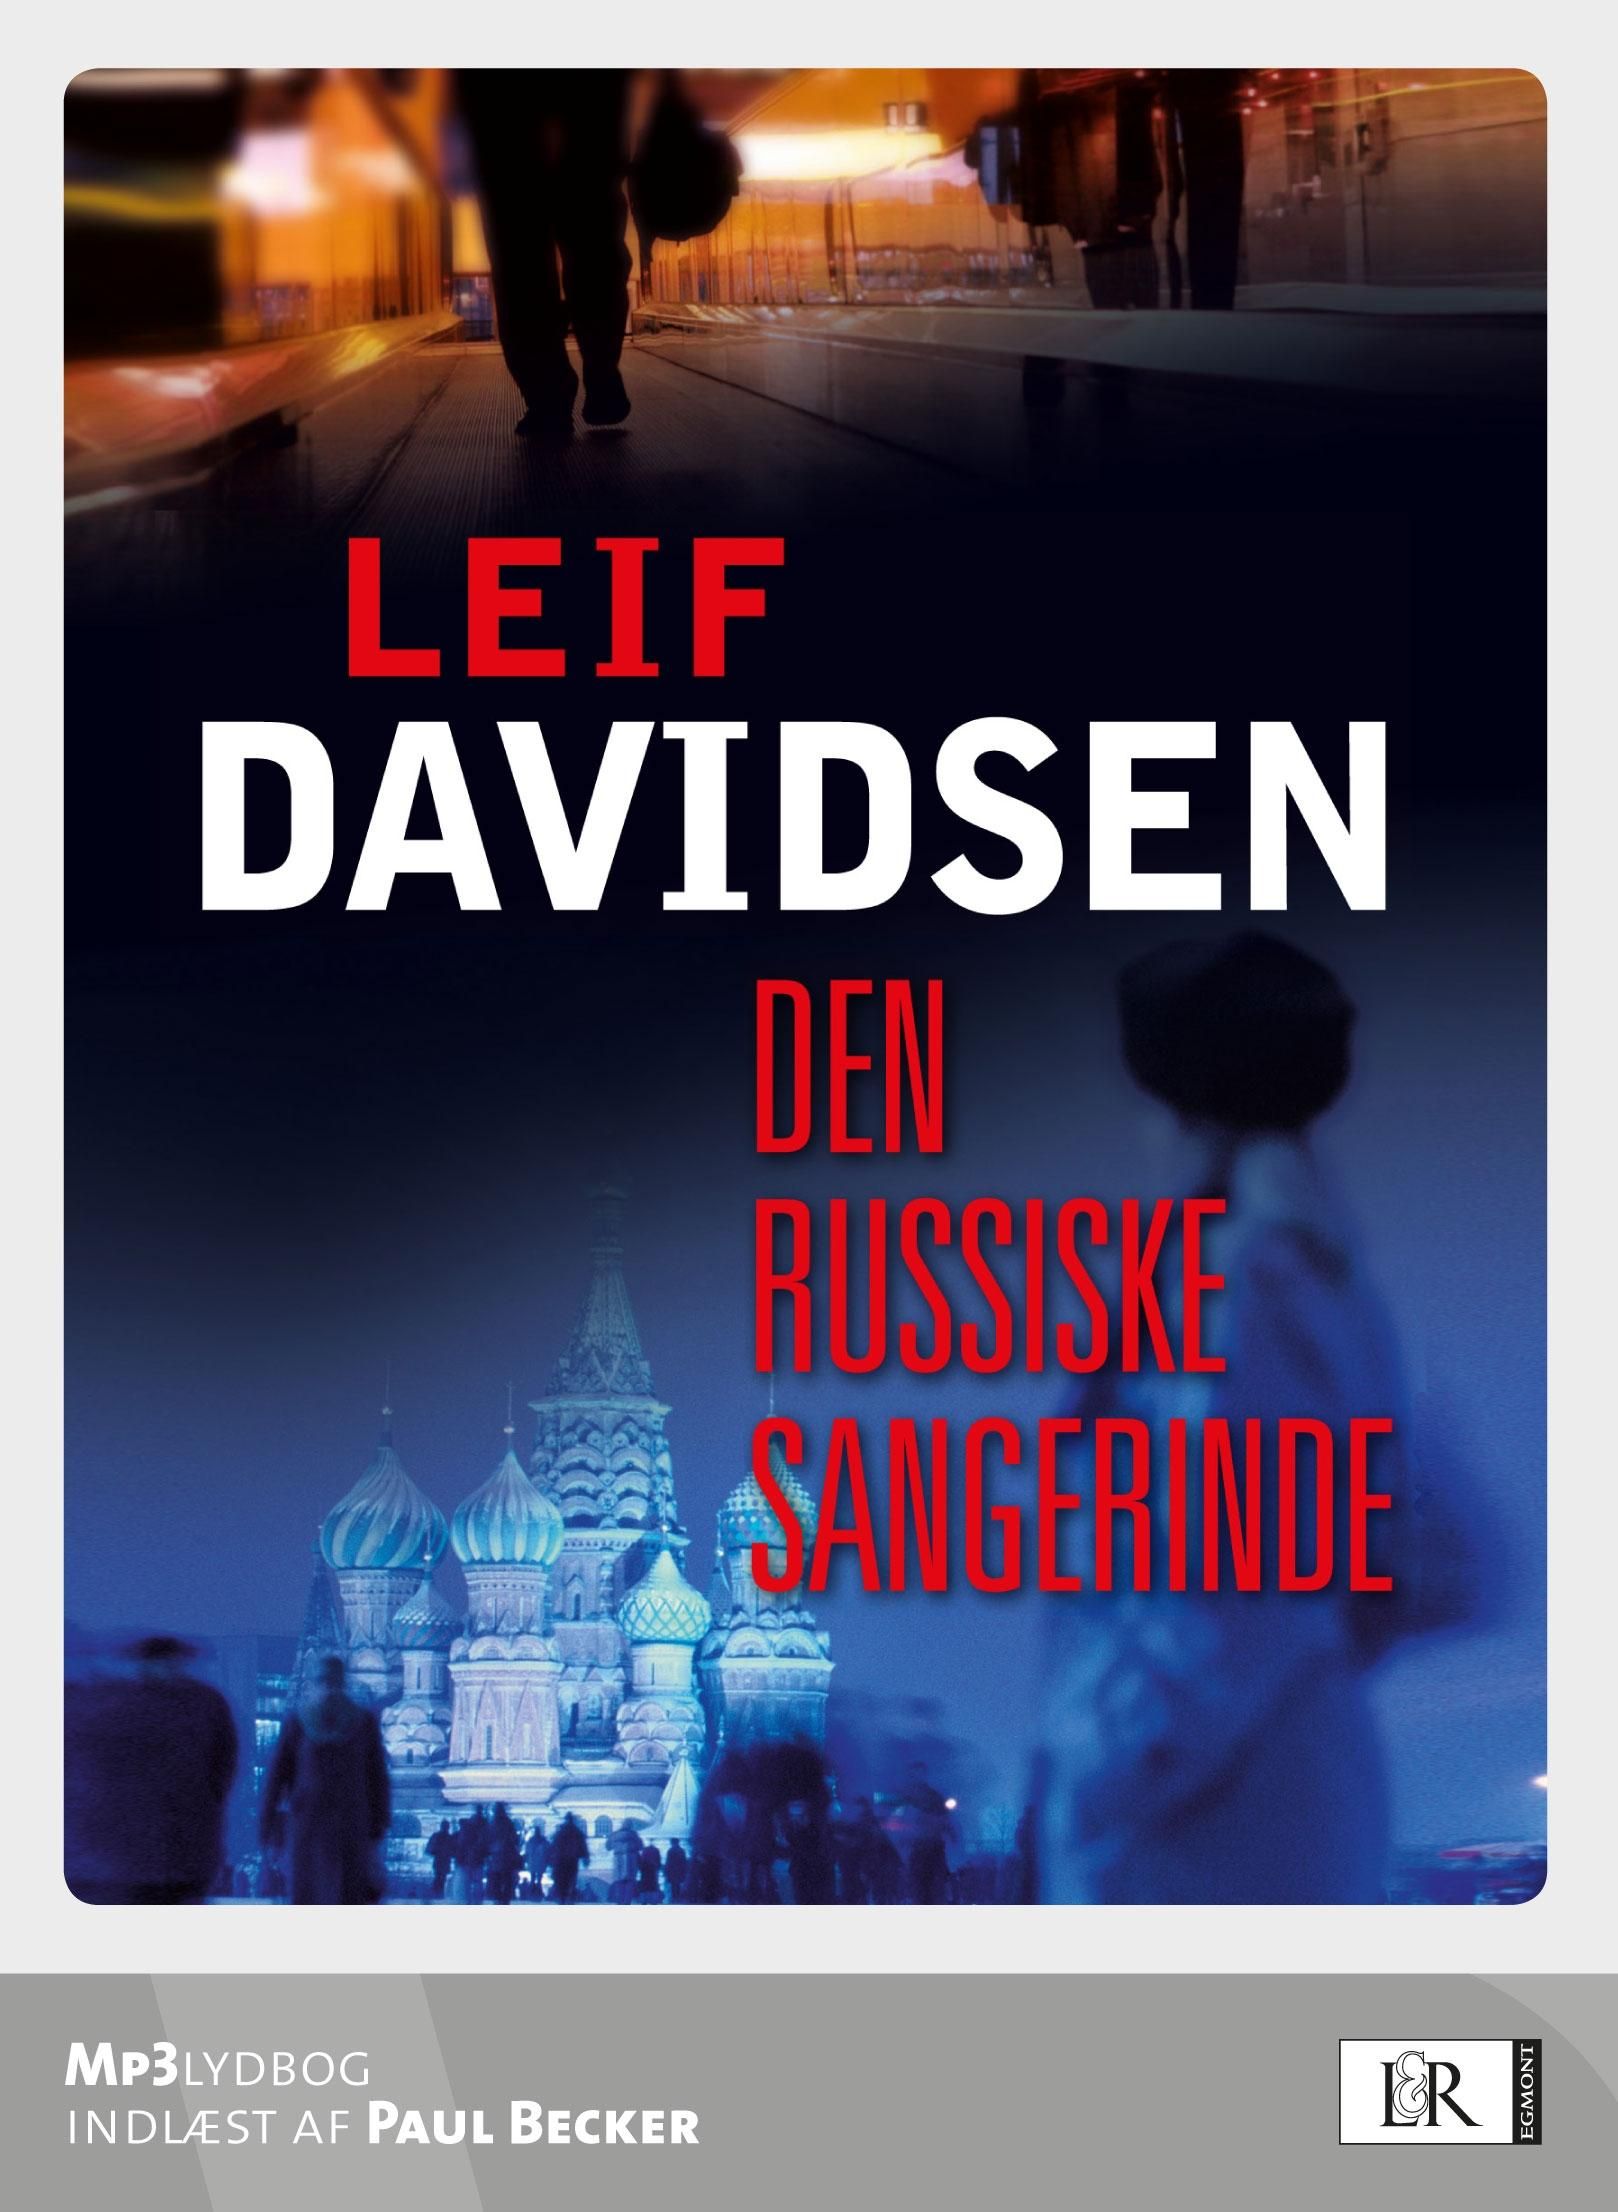 Den russiske sangerinde, audiobook by Leif Davidsen